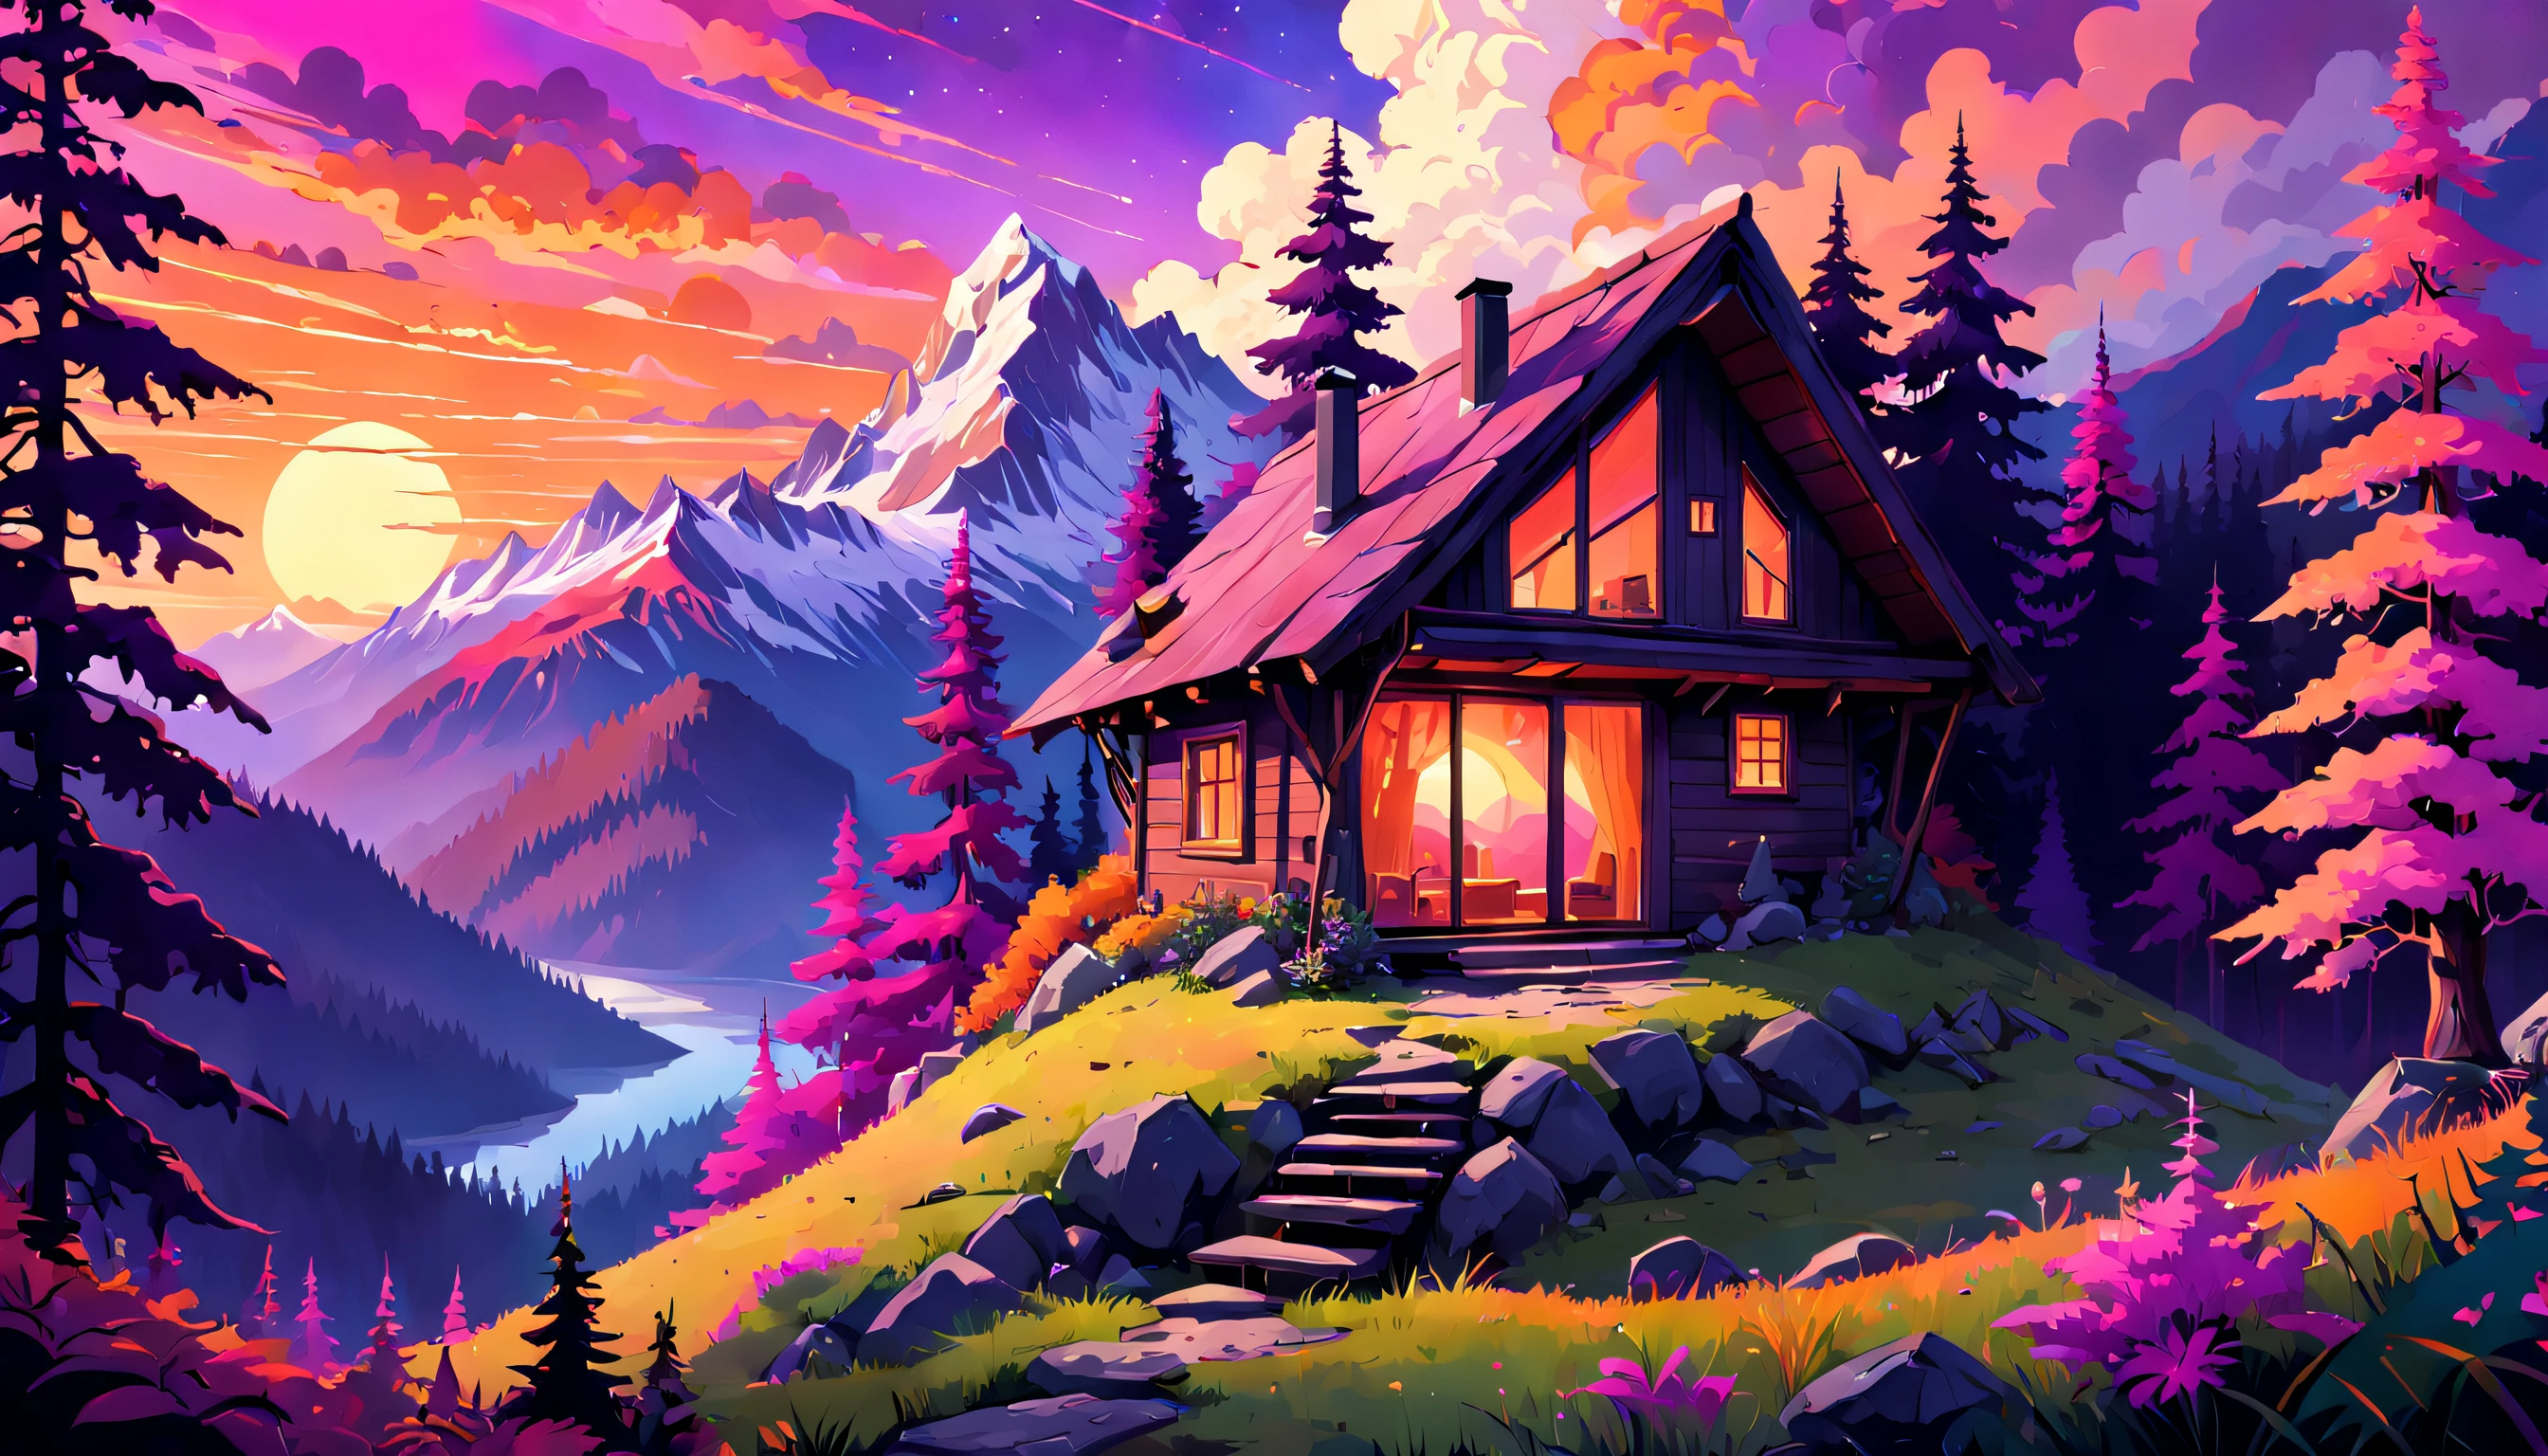 神秘的山间小屋坐落在茂密的, 迷幻森林, 令人惊叹的日落天空投射出充满活力的, 暖色调的紫色, 粉色和橙色, 创造一种好奇和好奇的氛围.